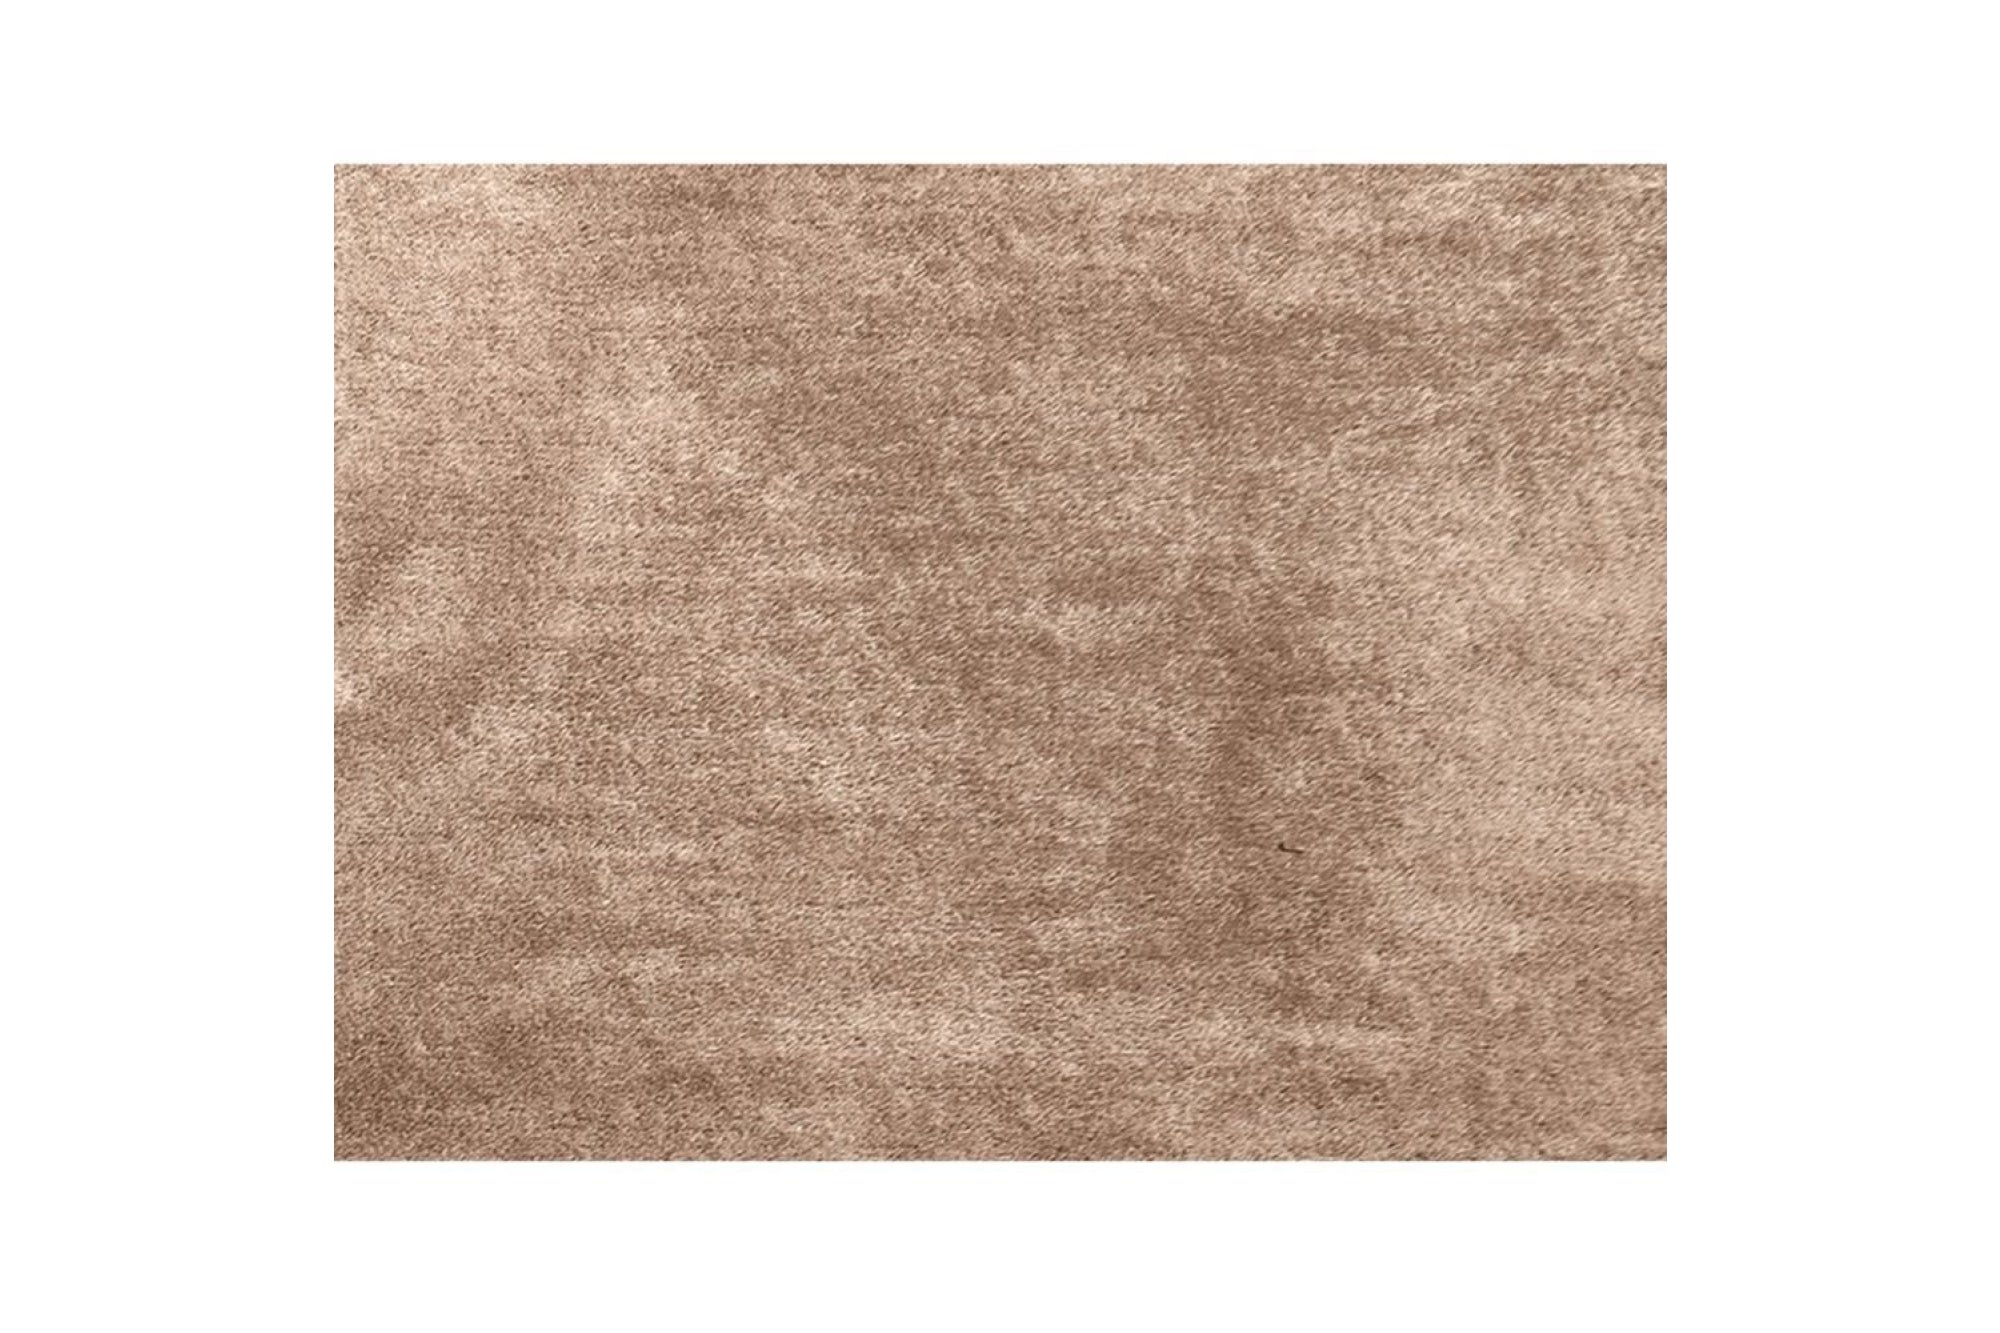 Szőnyeg - ANNAG barna polyester szőnyeg 80x150cm